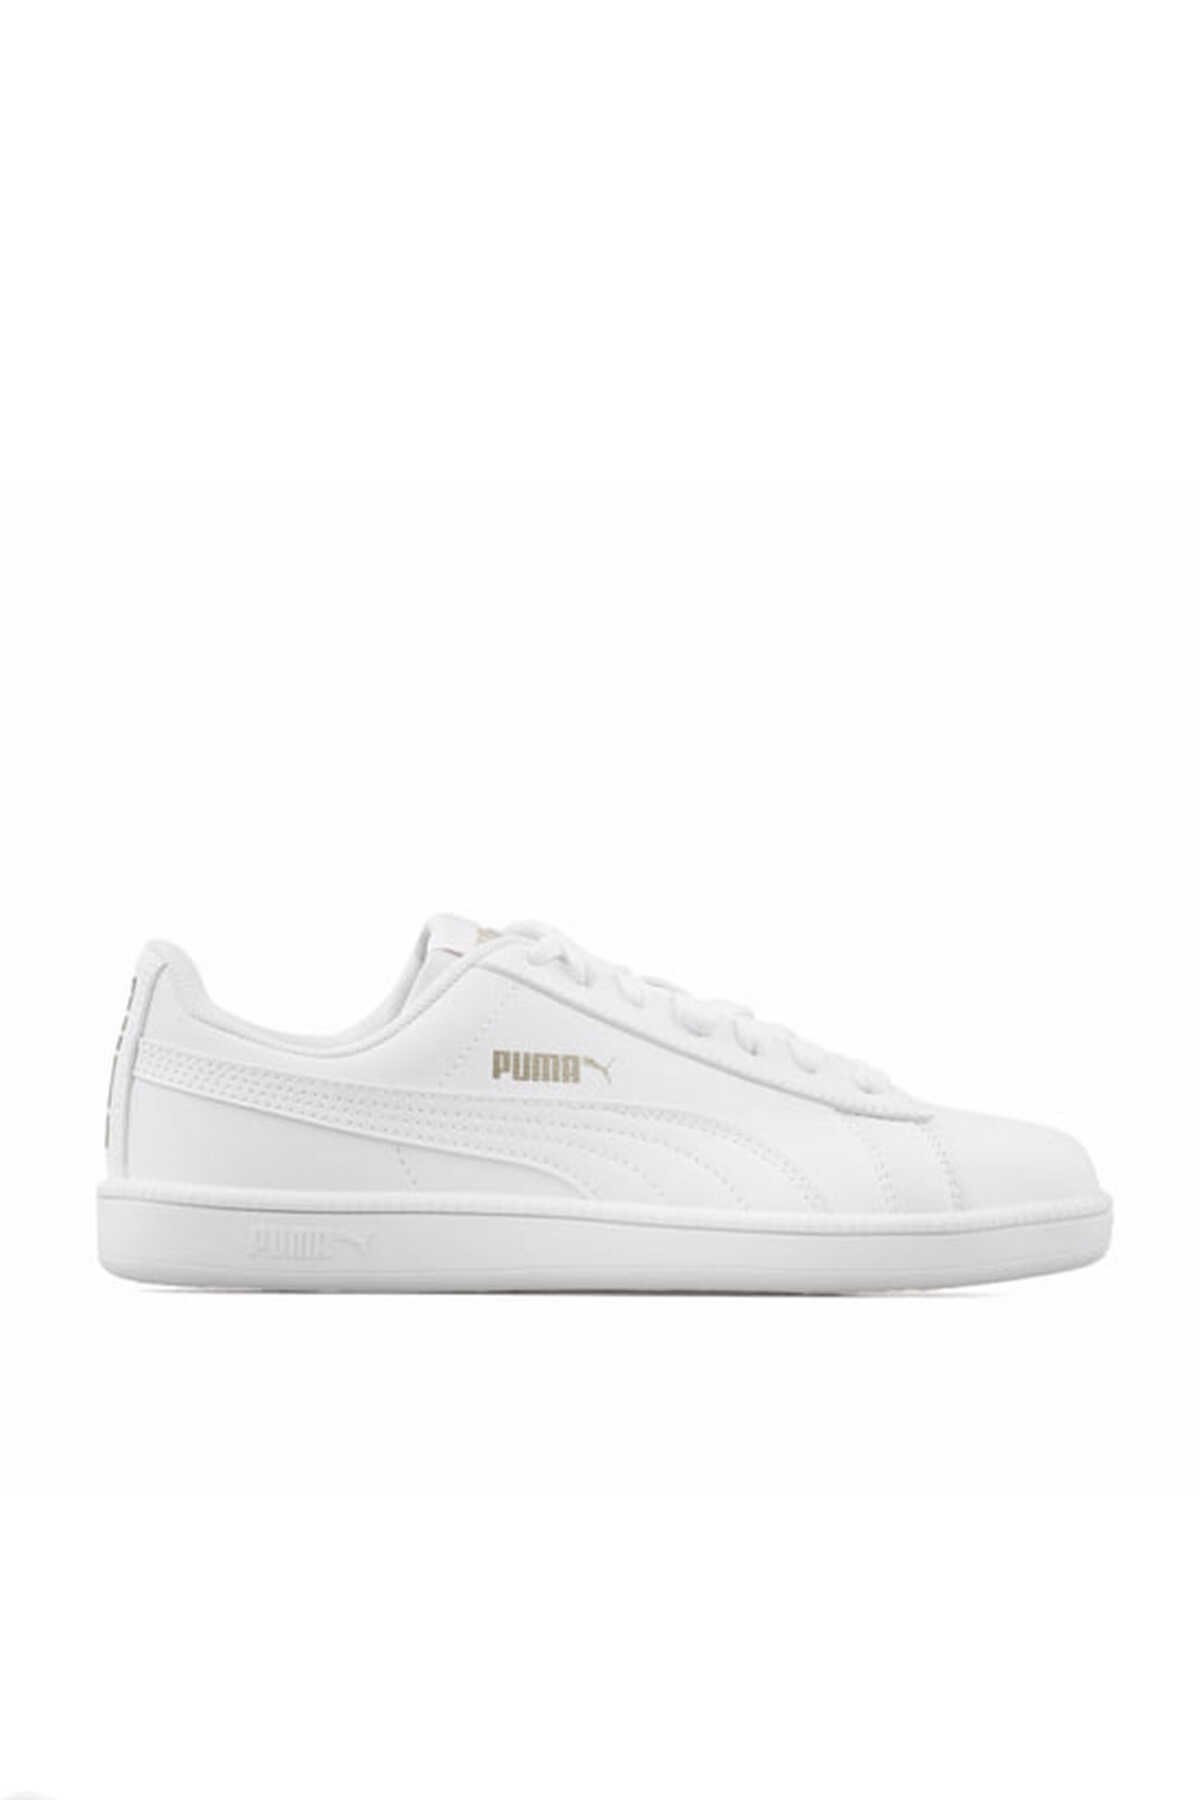 Puma - Puma Puma Up Unisex Sneaker Ayakkabı Beyaz